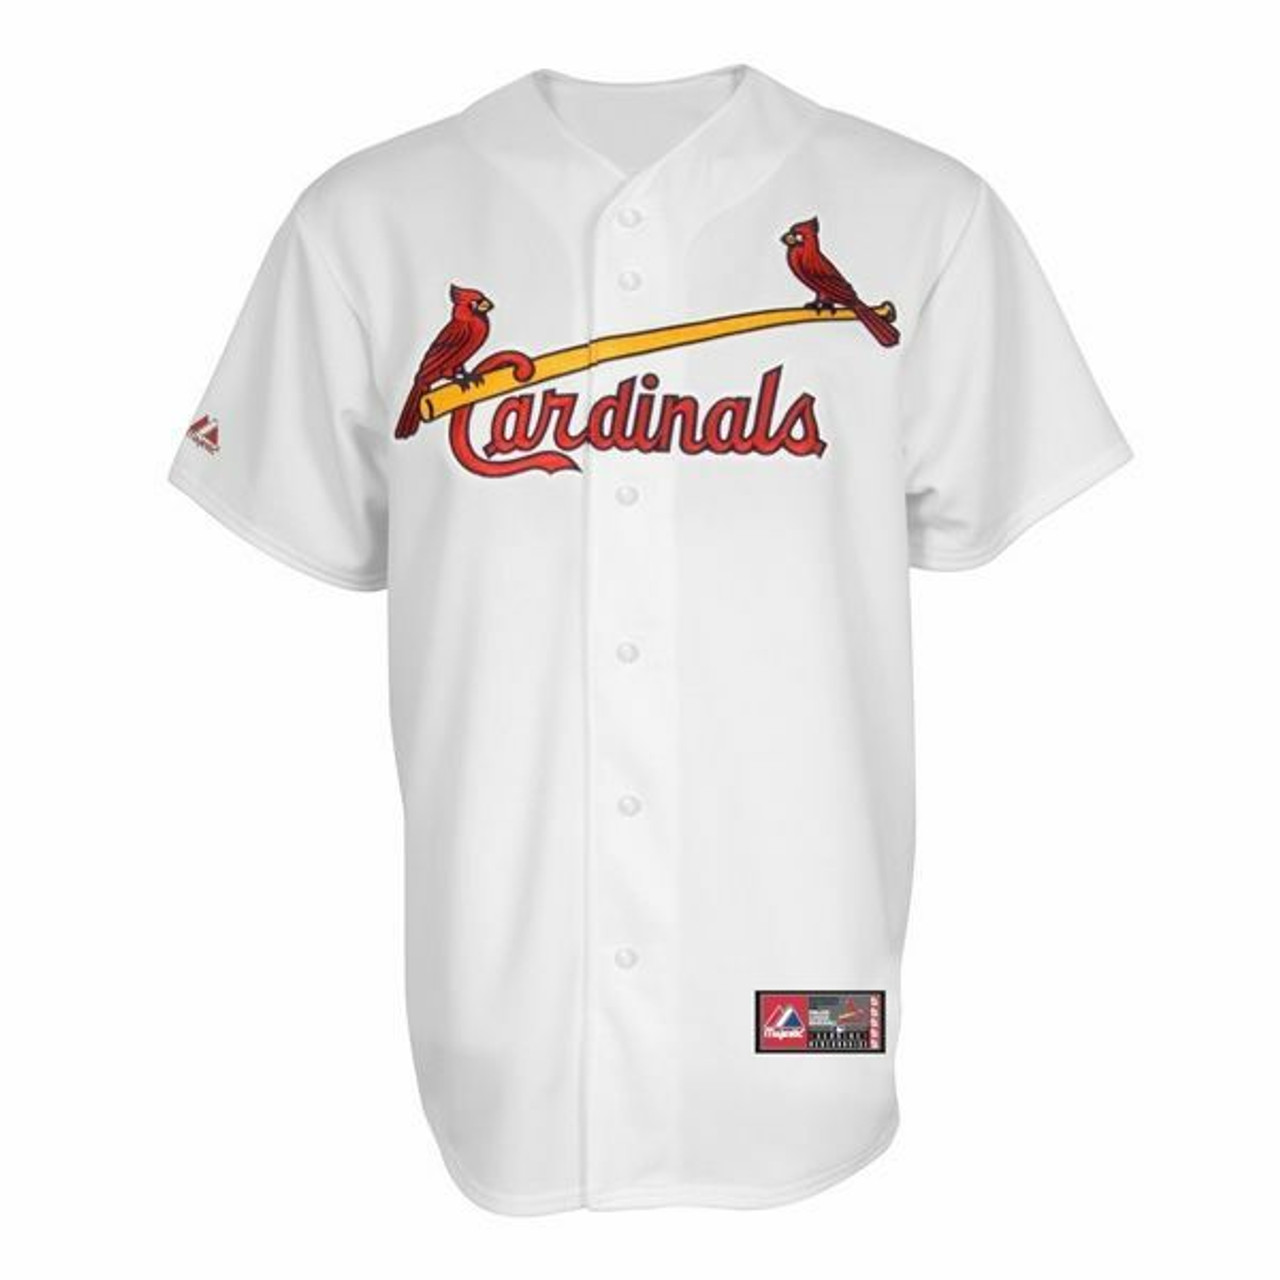 st louis cardinals baseball apparel